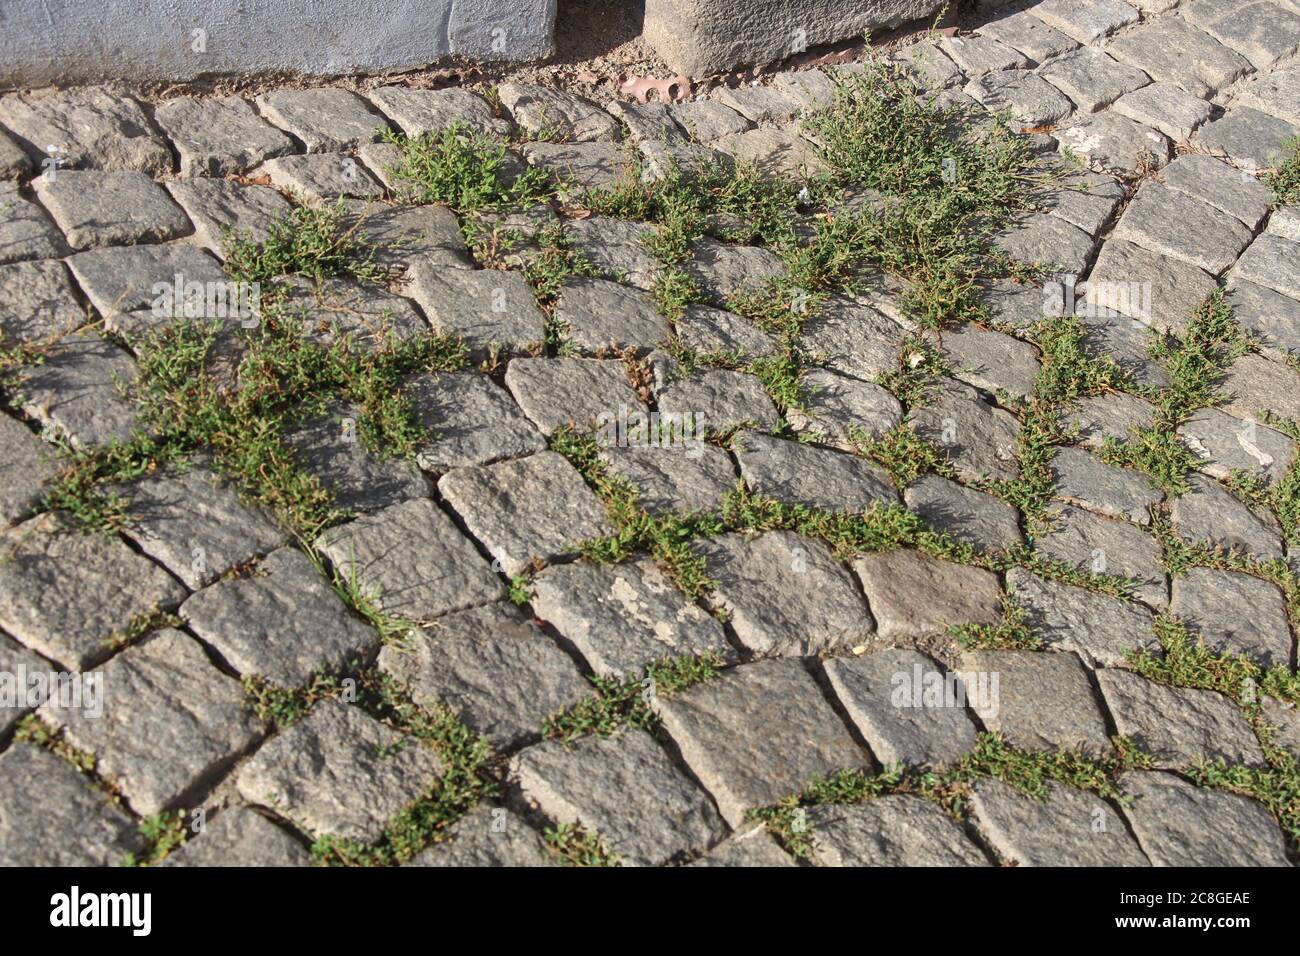 Gras wächst aus den Lücken zwischen den Pflastersteinen des Pflasters,  beschädigt den Pflaster und spaltet das Straßenbaumaterial Stockfotografie  - Alamy